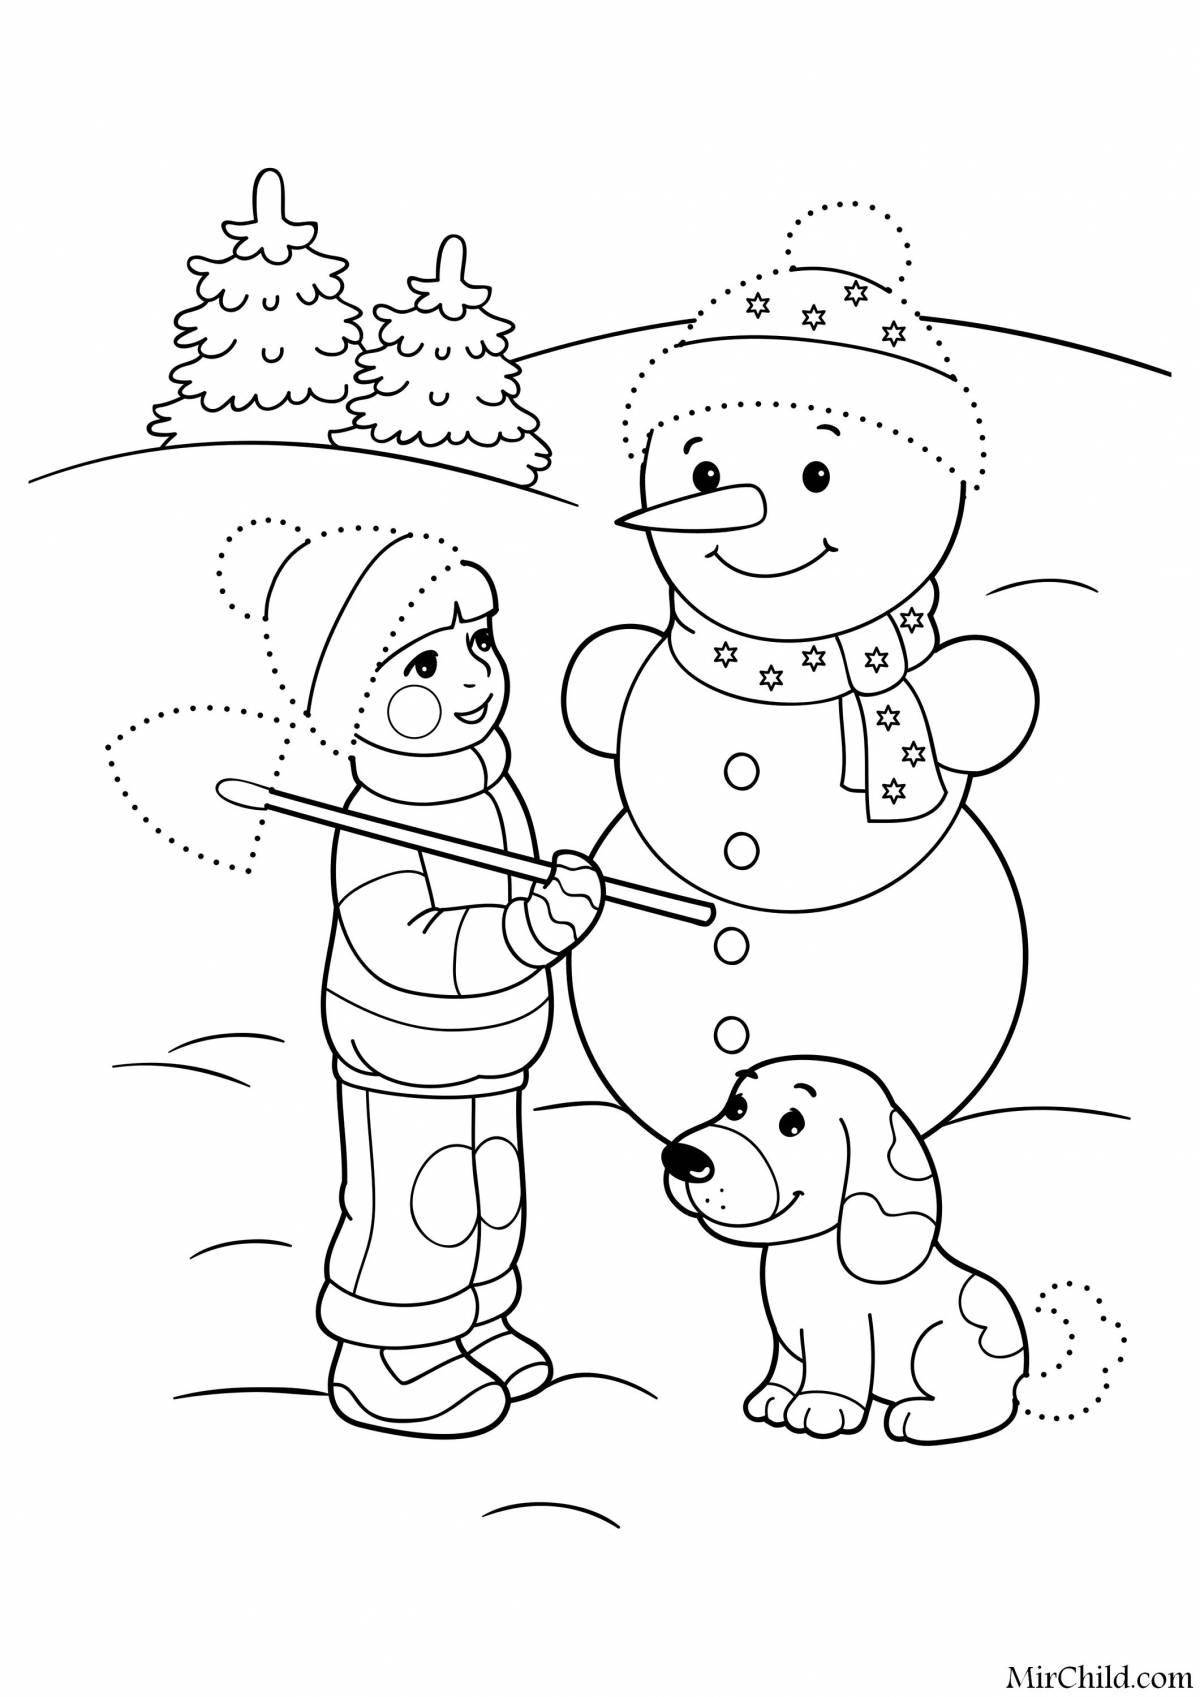 Блестящая раскраска снеговик для детей 3-4 лет